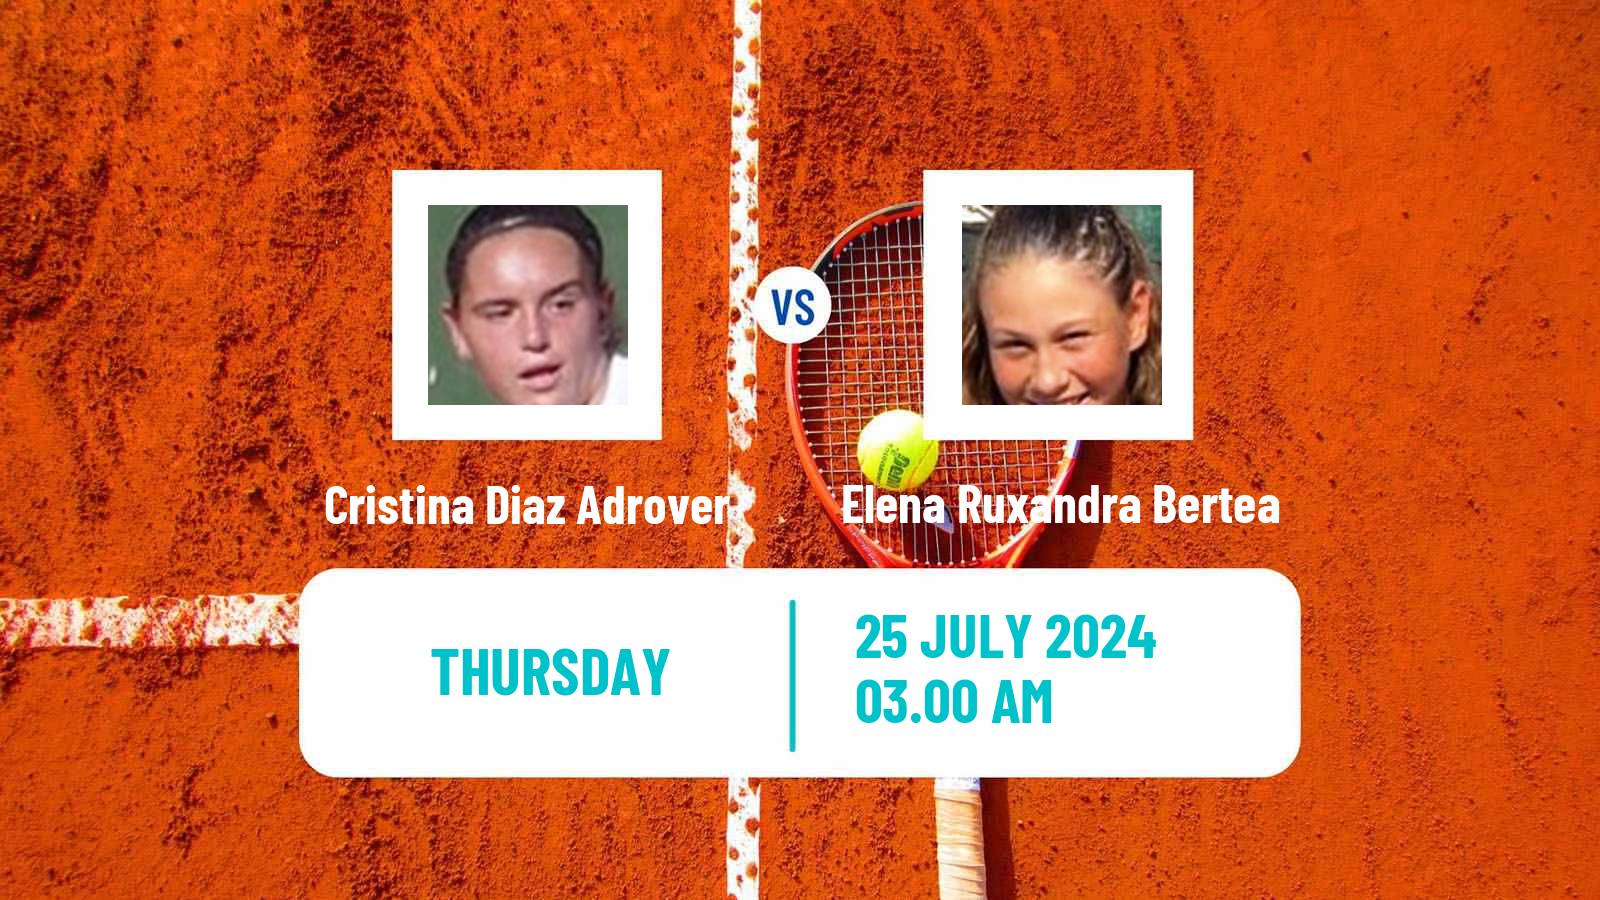 Tennis ITF W15 Satu Mare Women Cristina Diaz Adrover - Elena Ruxandra Bertea